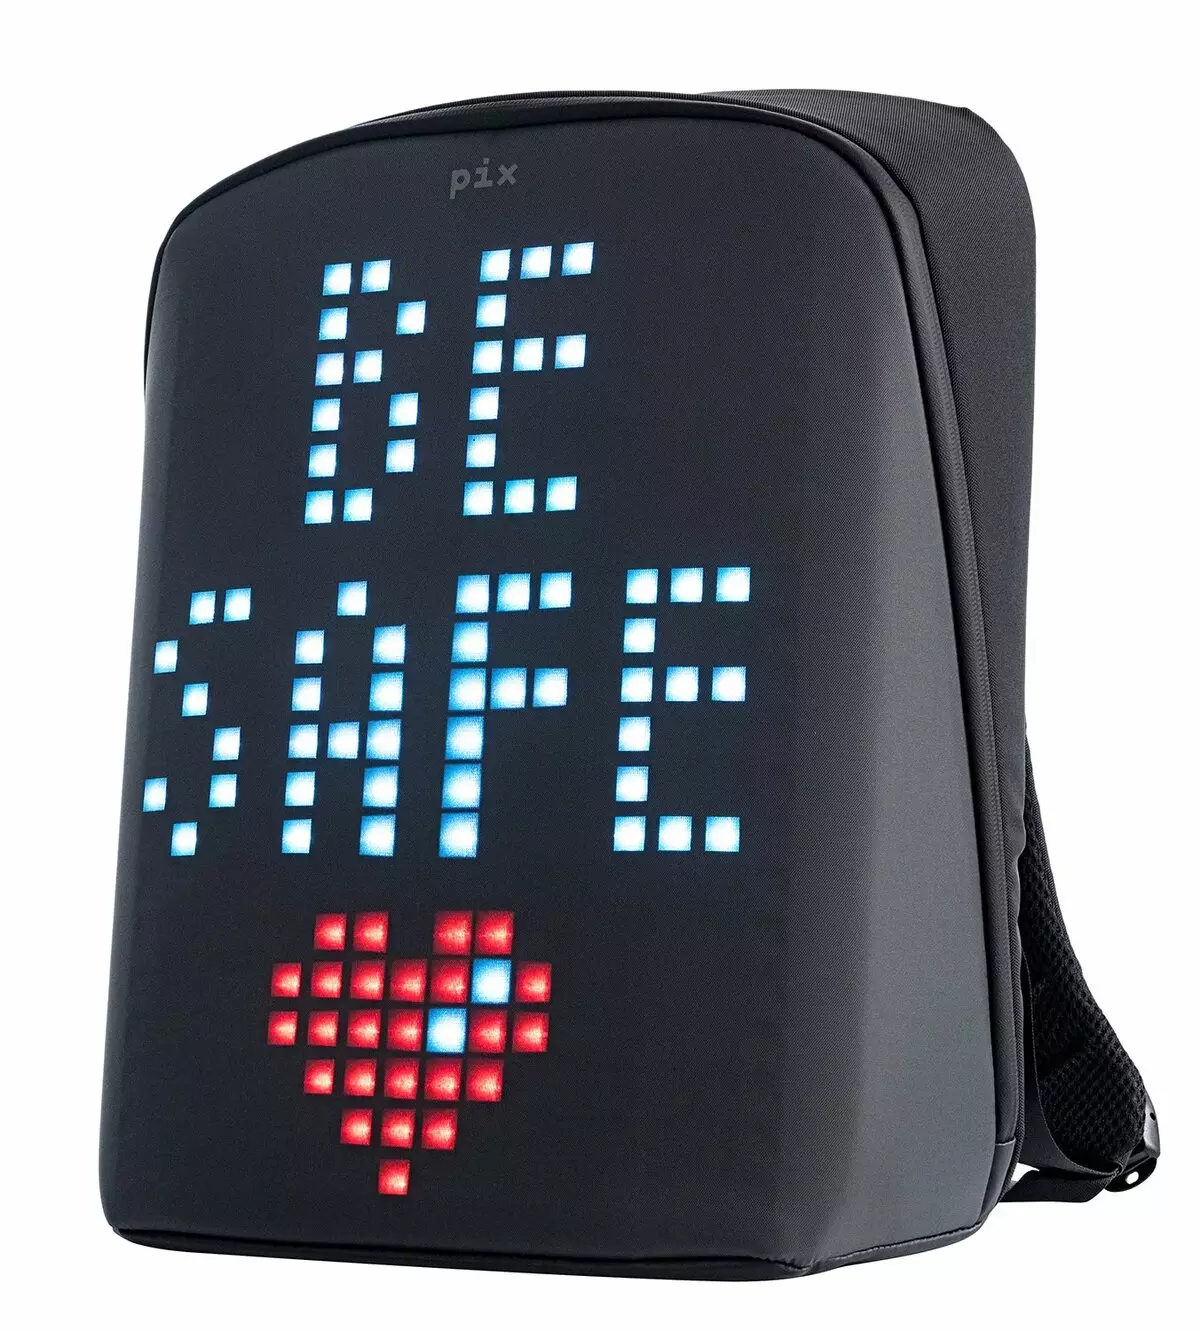 Naprtnjače zaslona: Pregled luminoznih digitalnih ruksaka s LED zaslonom odostraga. Kako spojiti 